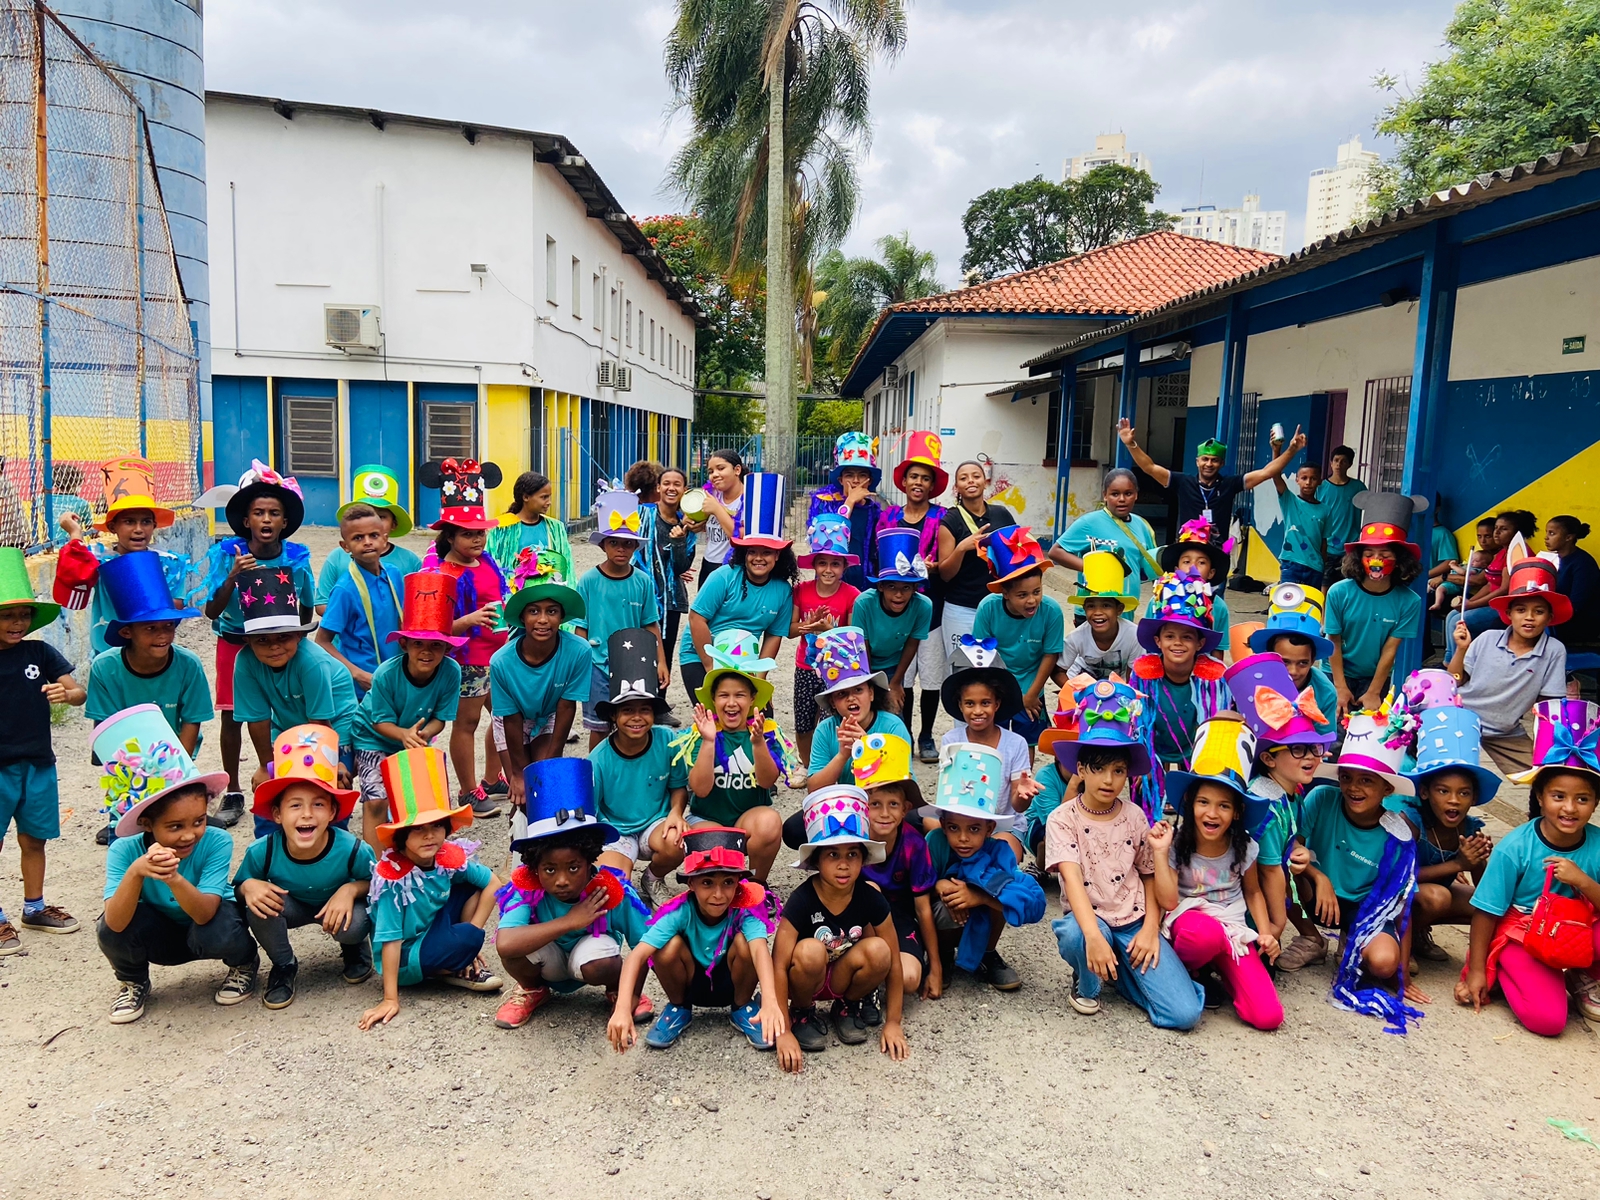 Crianças posam para a foto com roupas carnavalescas. Todas estão com camisetas azuis e usam chapéus coloridos com laços